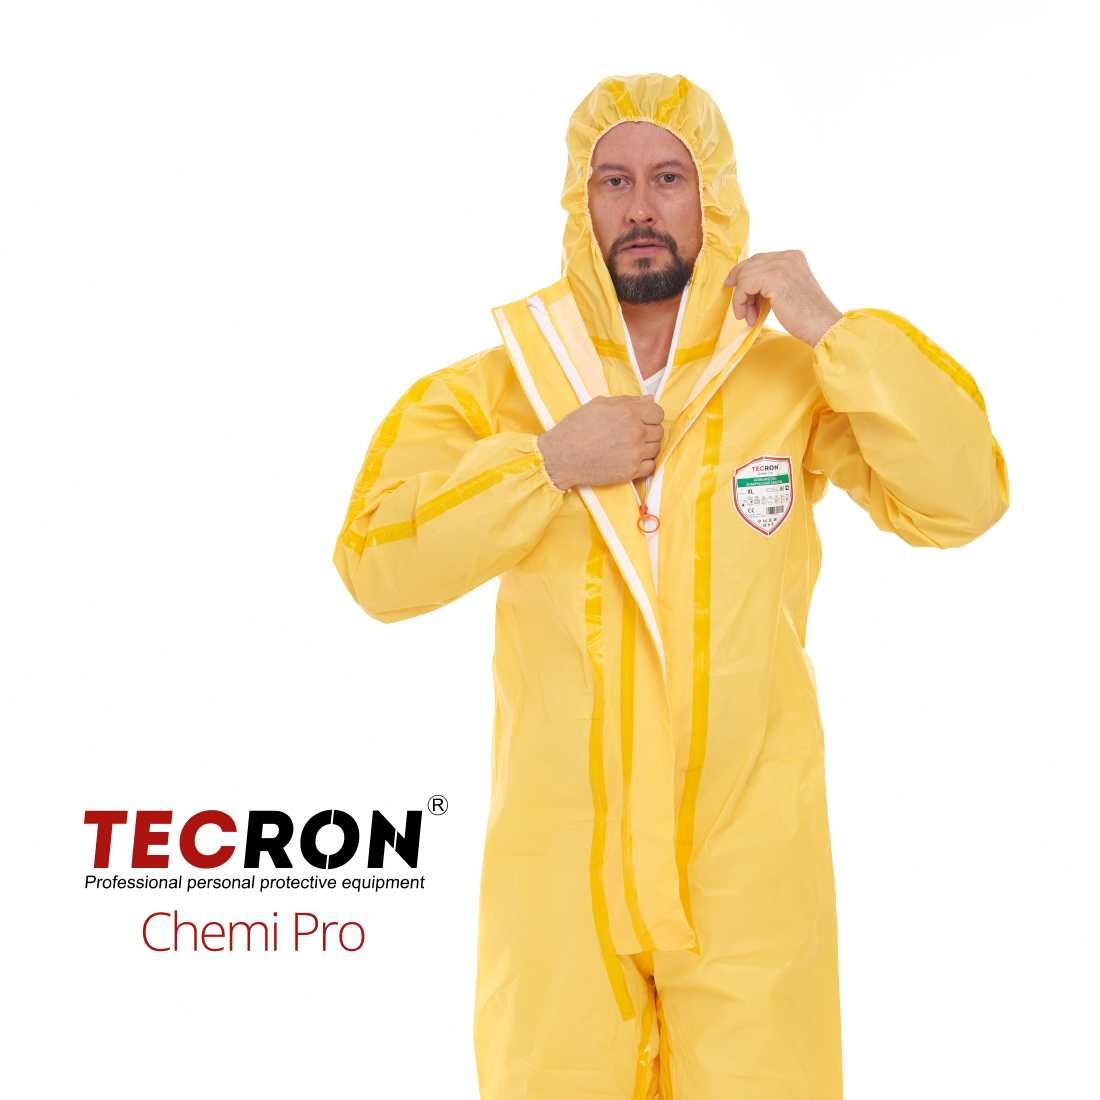 Комбинезон химической защиты TECRON Chemi Pro ТИП 3, химзащита 90 г/м